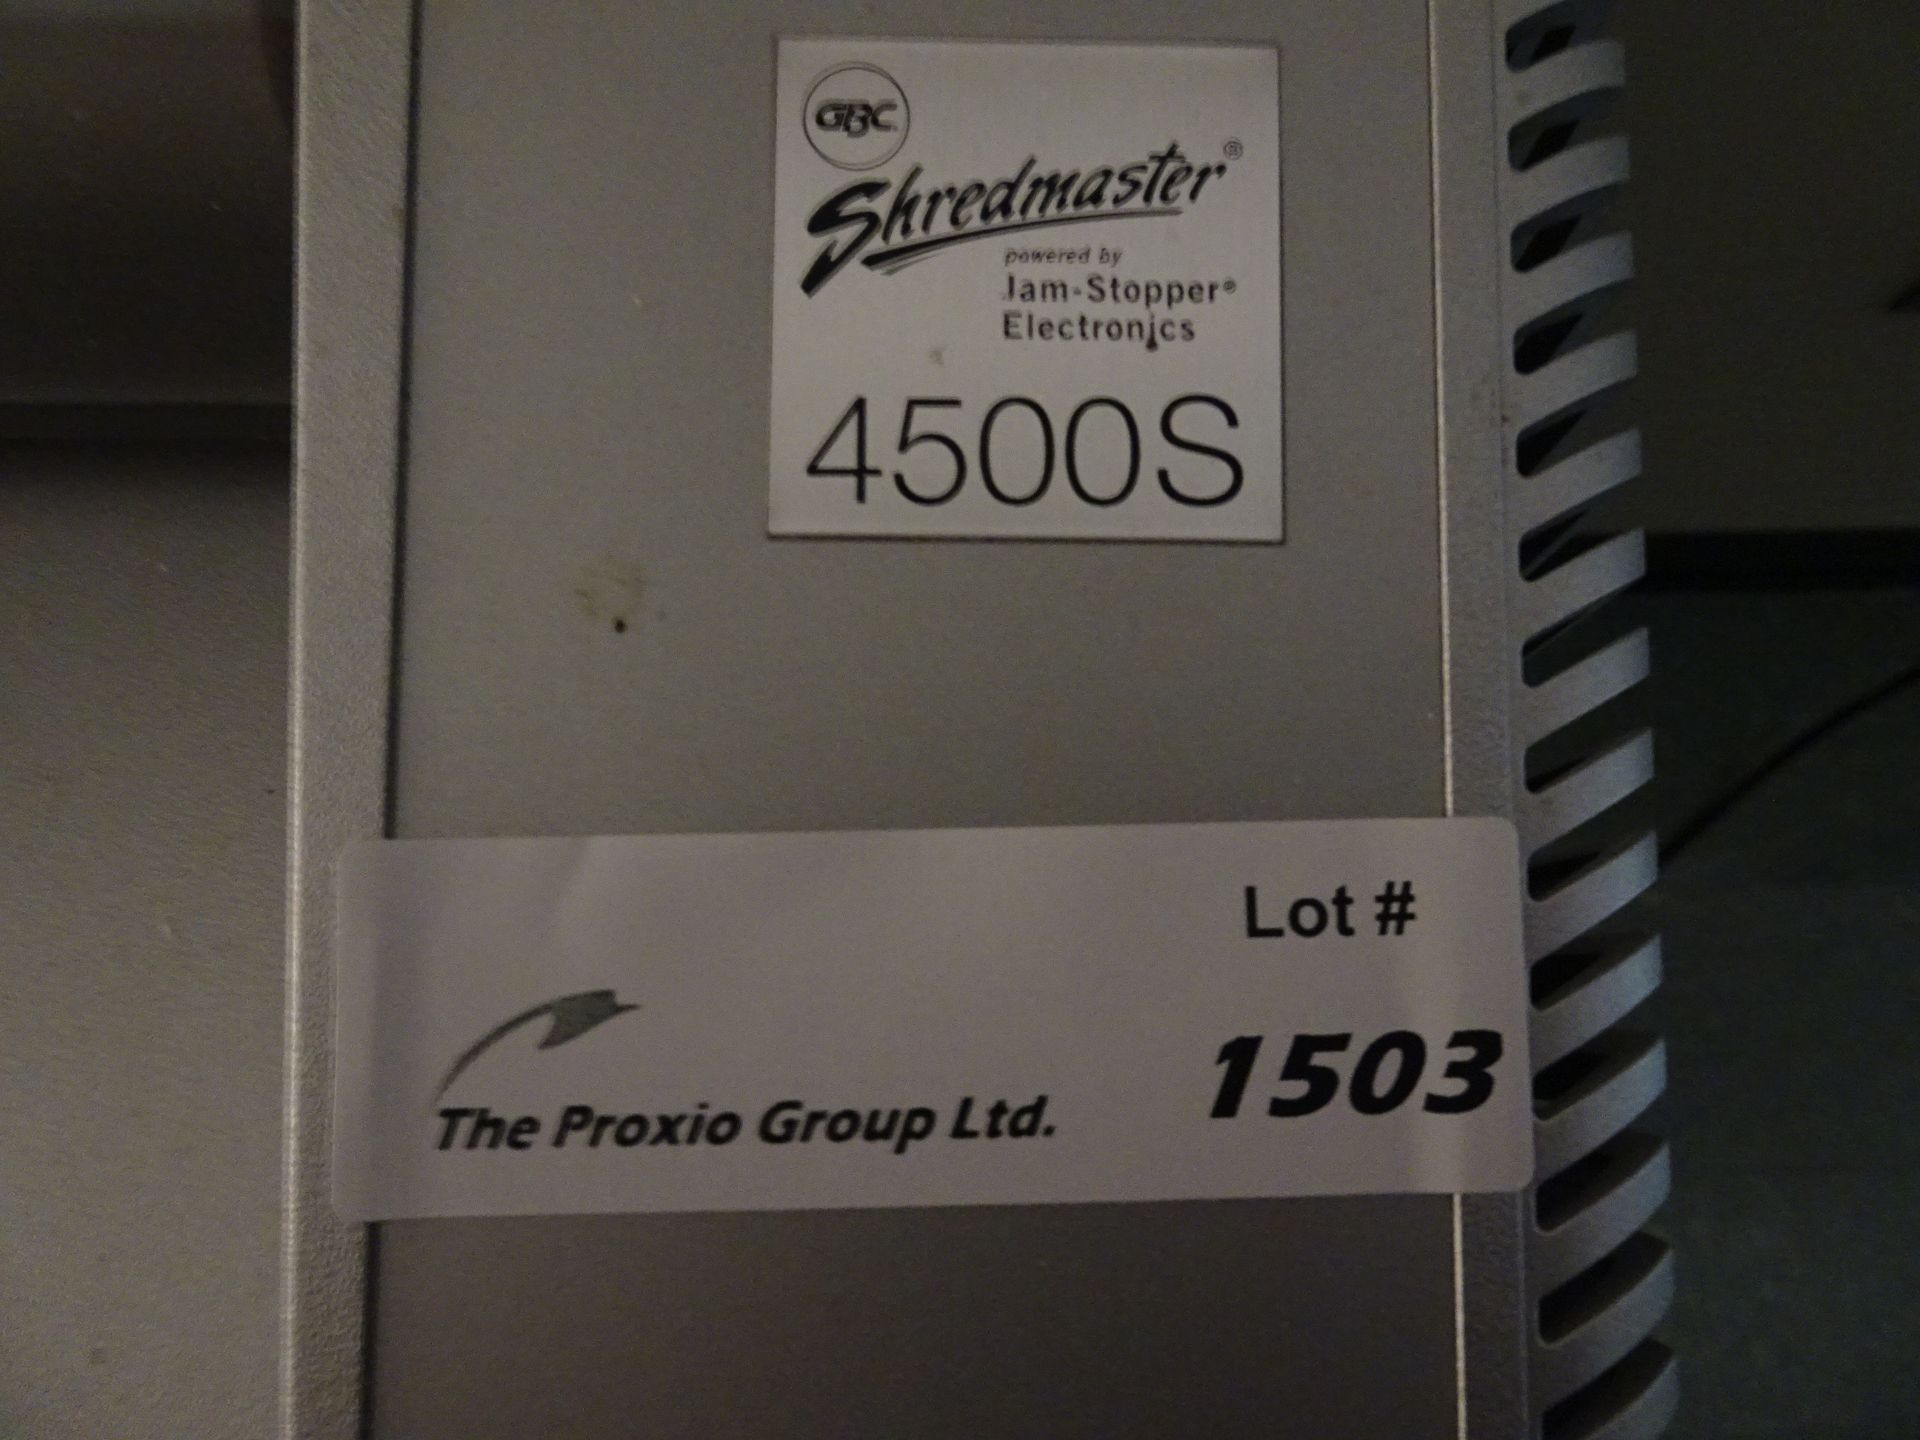 GBC Shredmaster 4500S Paper Shredder - Image 2 of 2